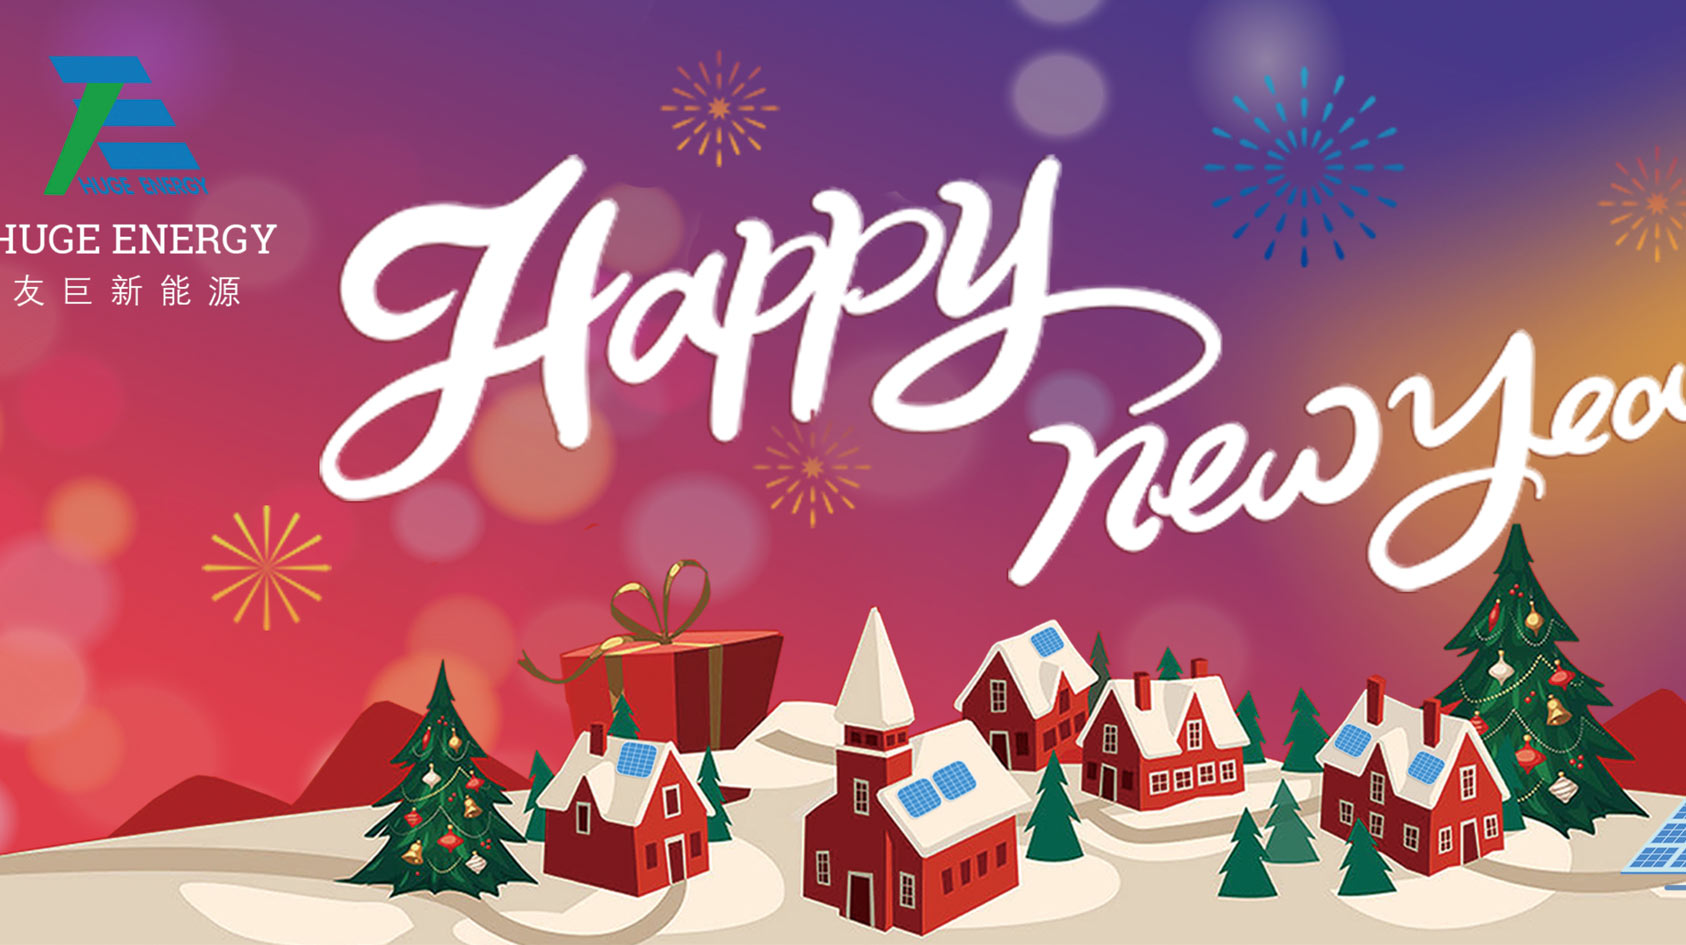 Zu Beginn des neuen Jahres wünscht Ihnen Huge Energy einen guten Rutsch ins neue Jahr!